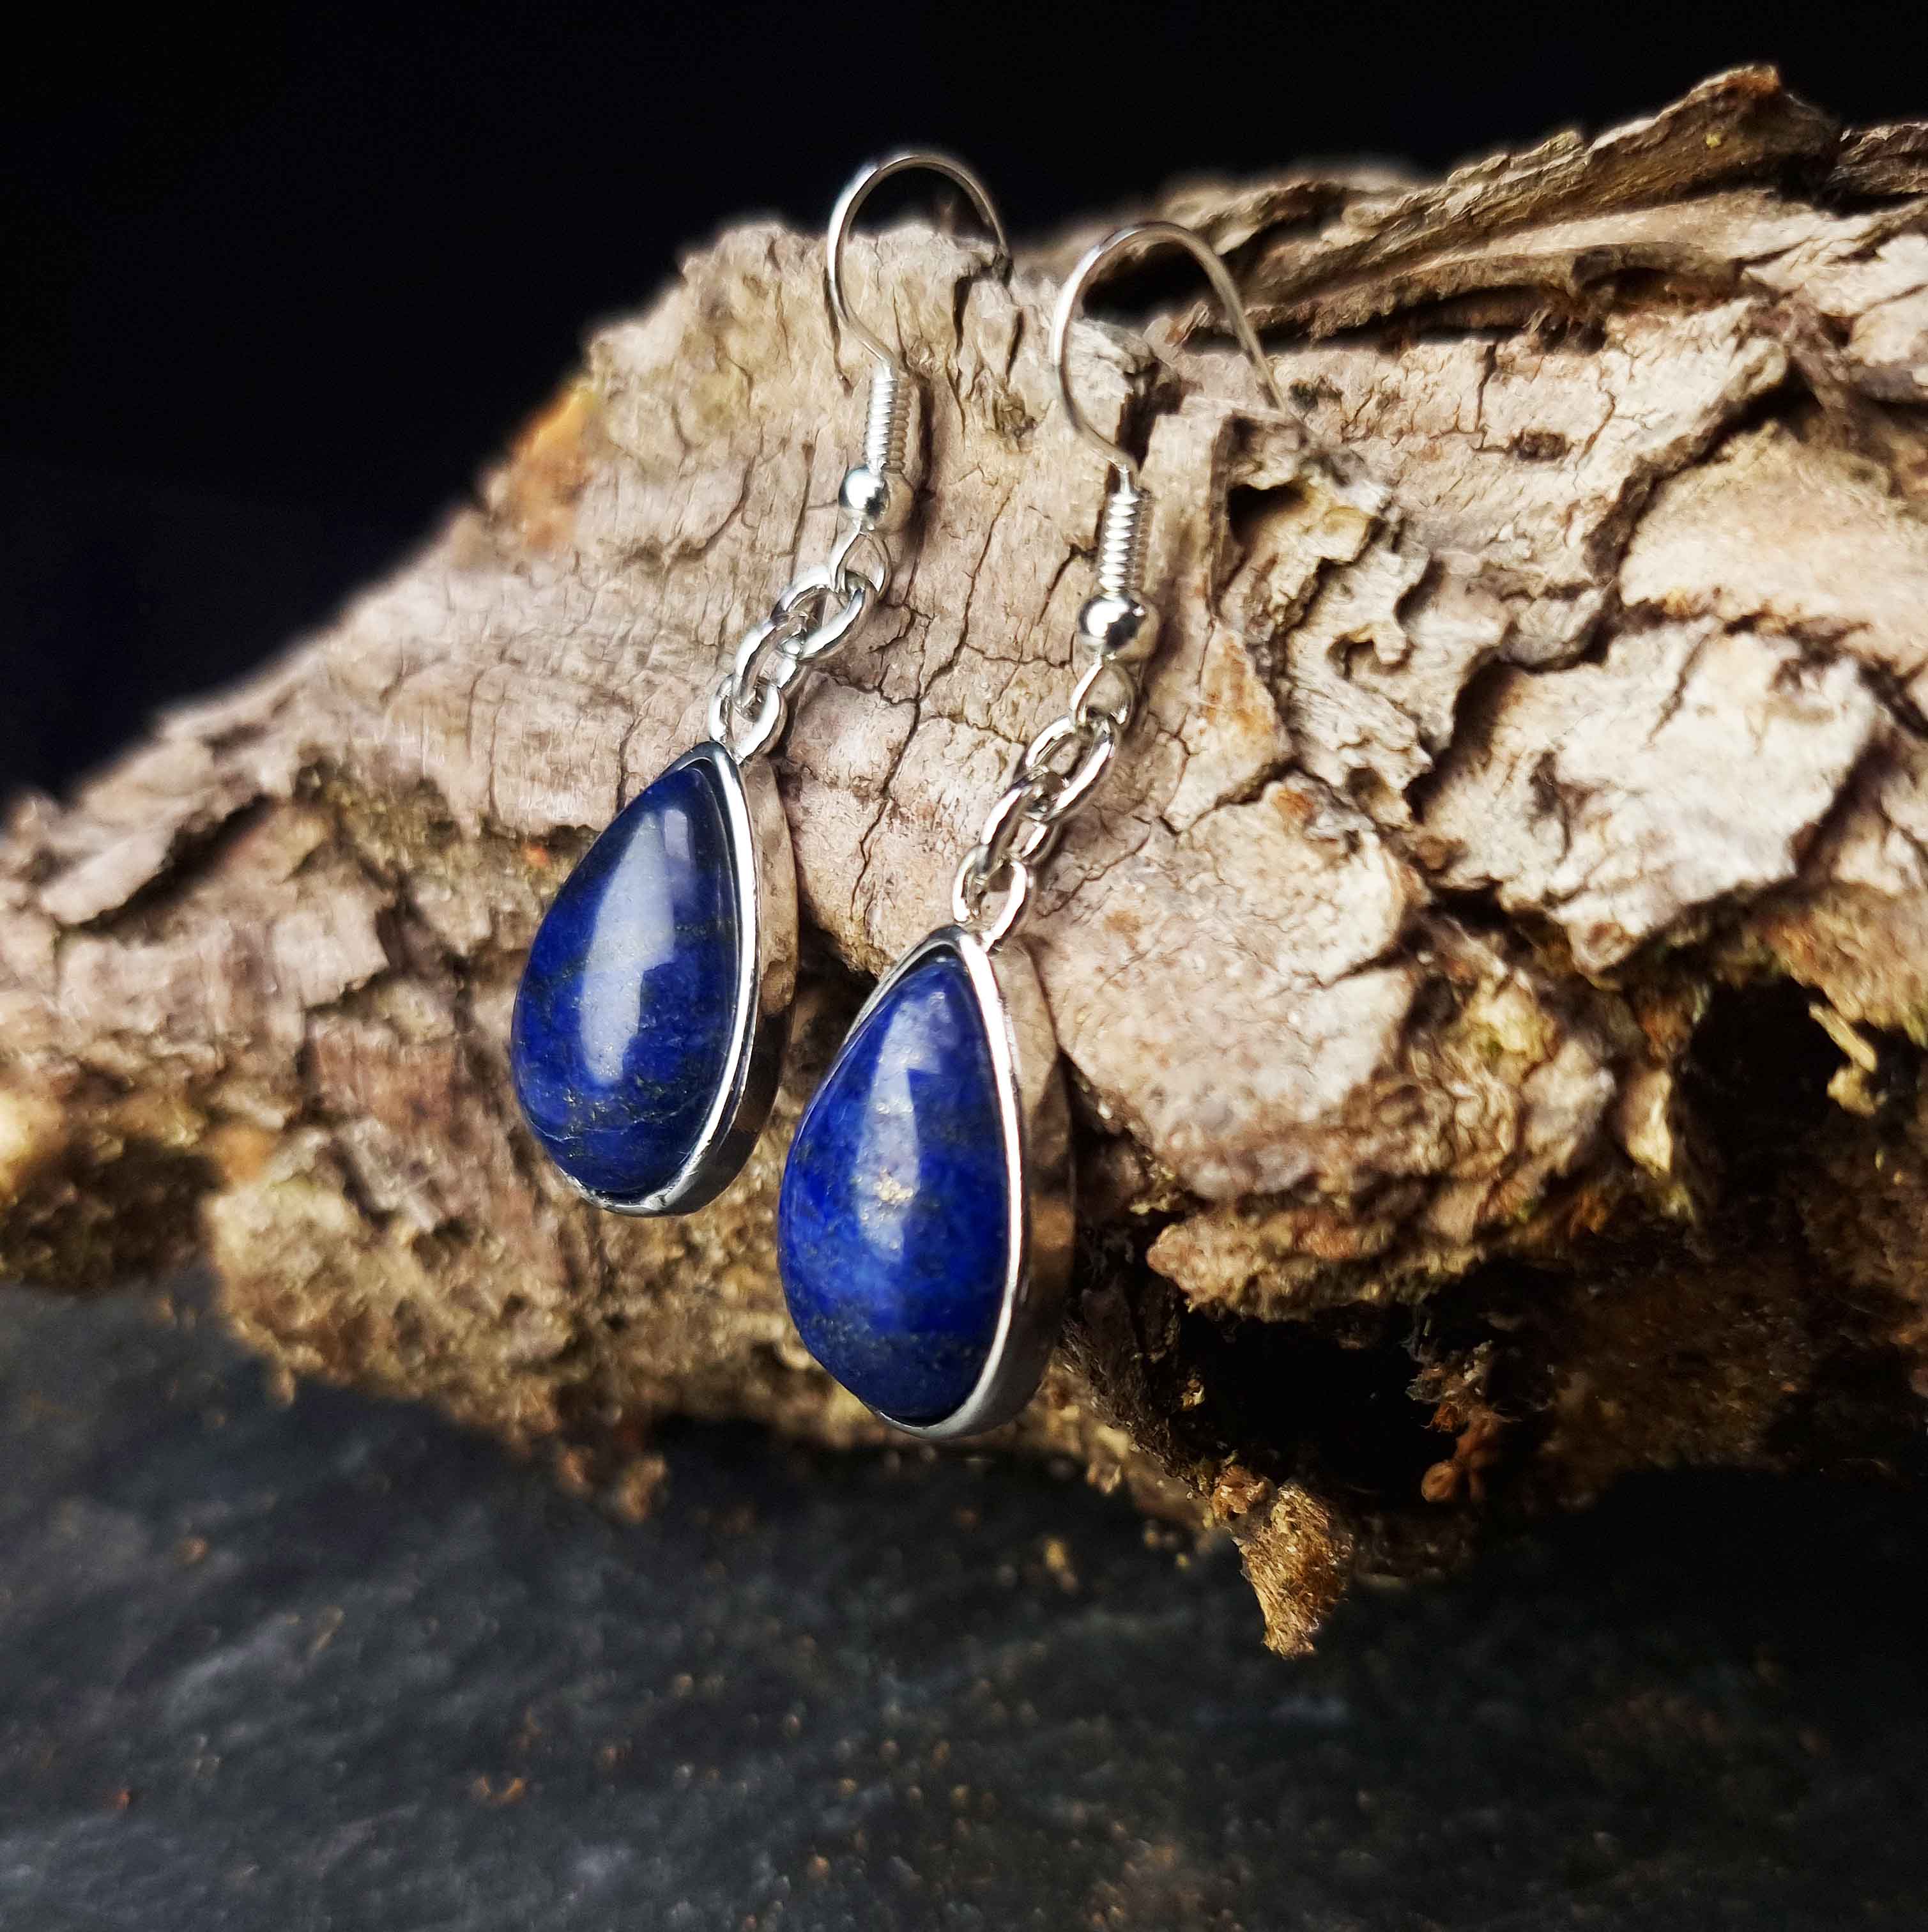 Blauwe edelstenen oorbellen met lapis lazuli en sterling zilver (925) hangend aan stronk | Lapis Lazuli Teardrop